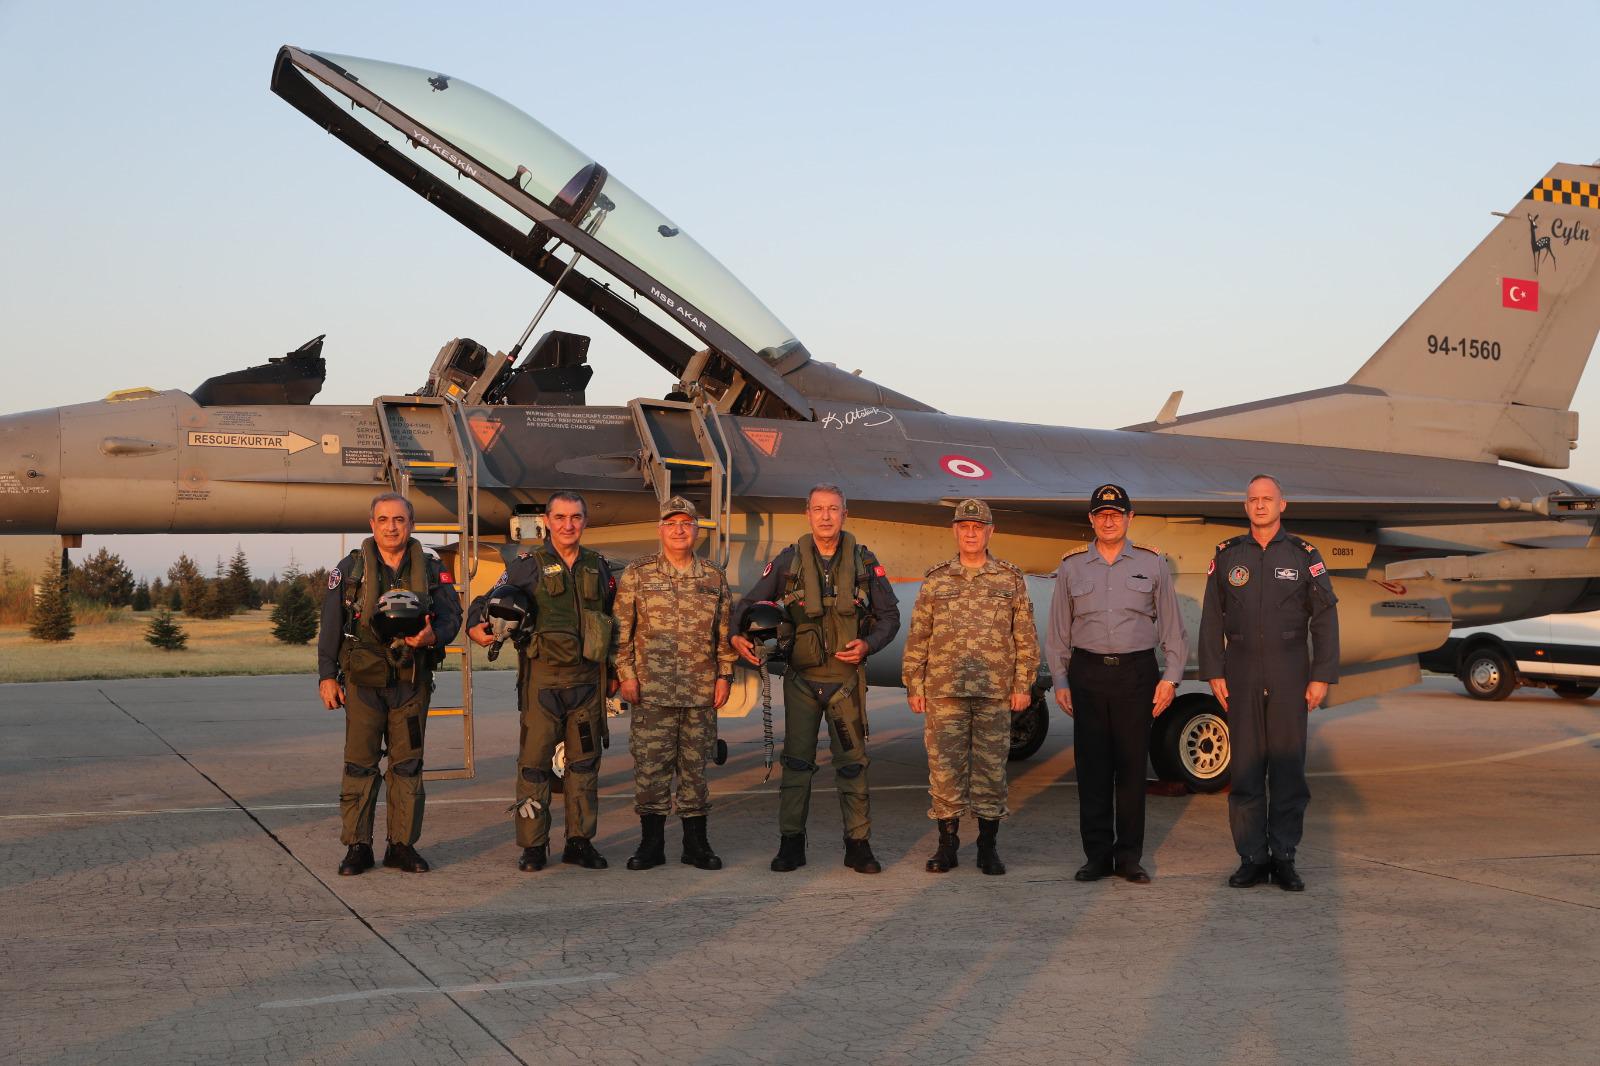 Millî Savunma Bakanı Akar, F-16 İle Ege’nin kuzeyinde uçtu